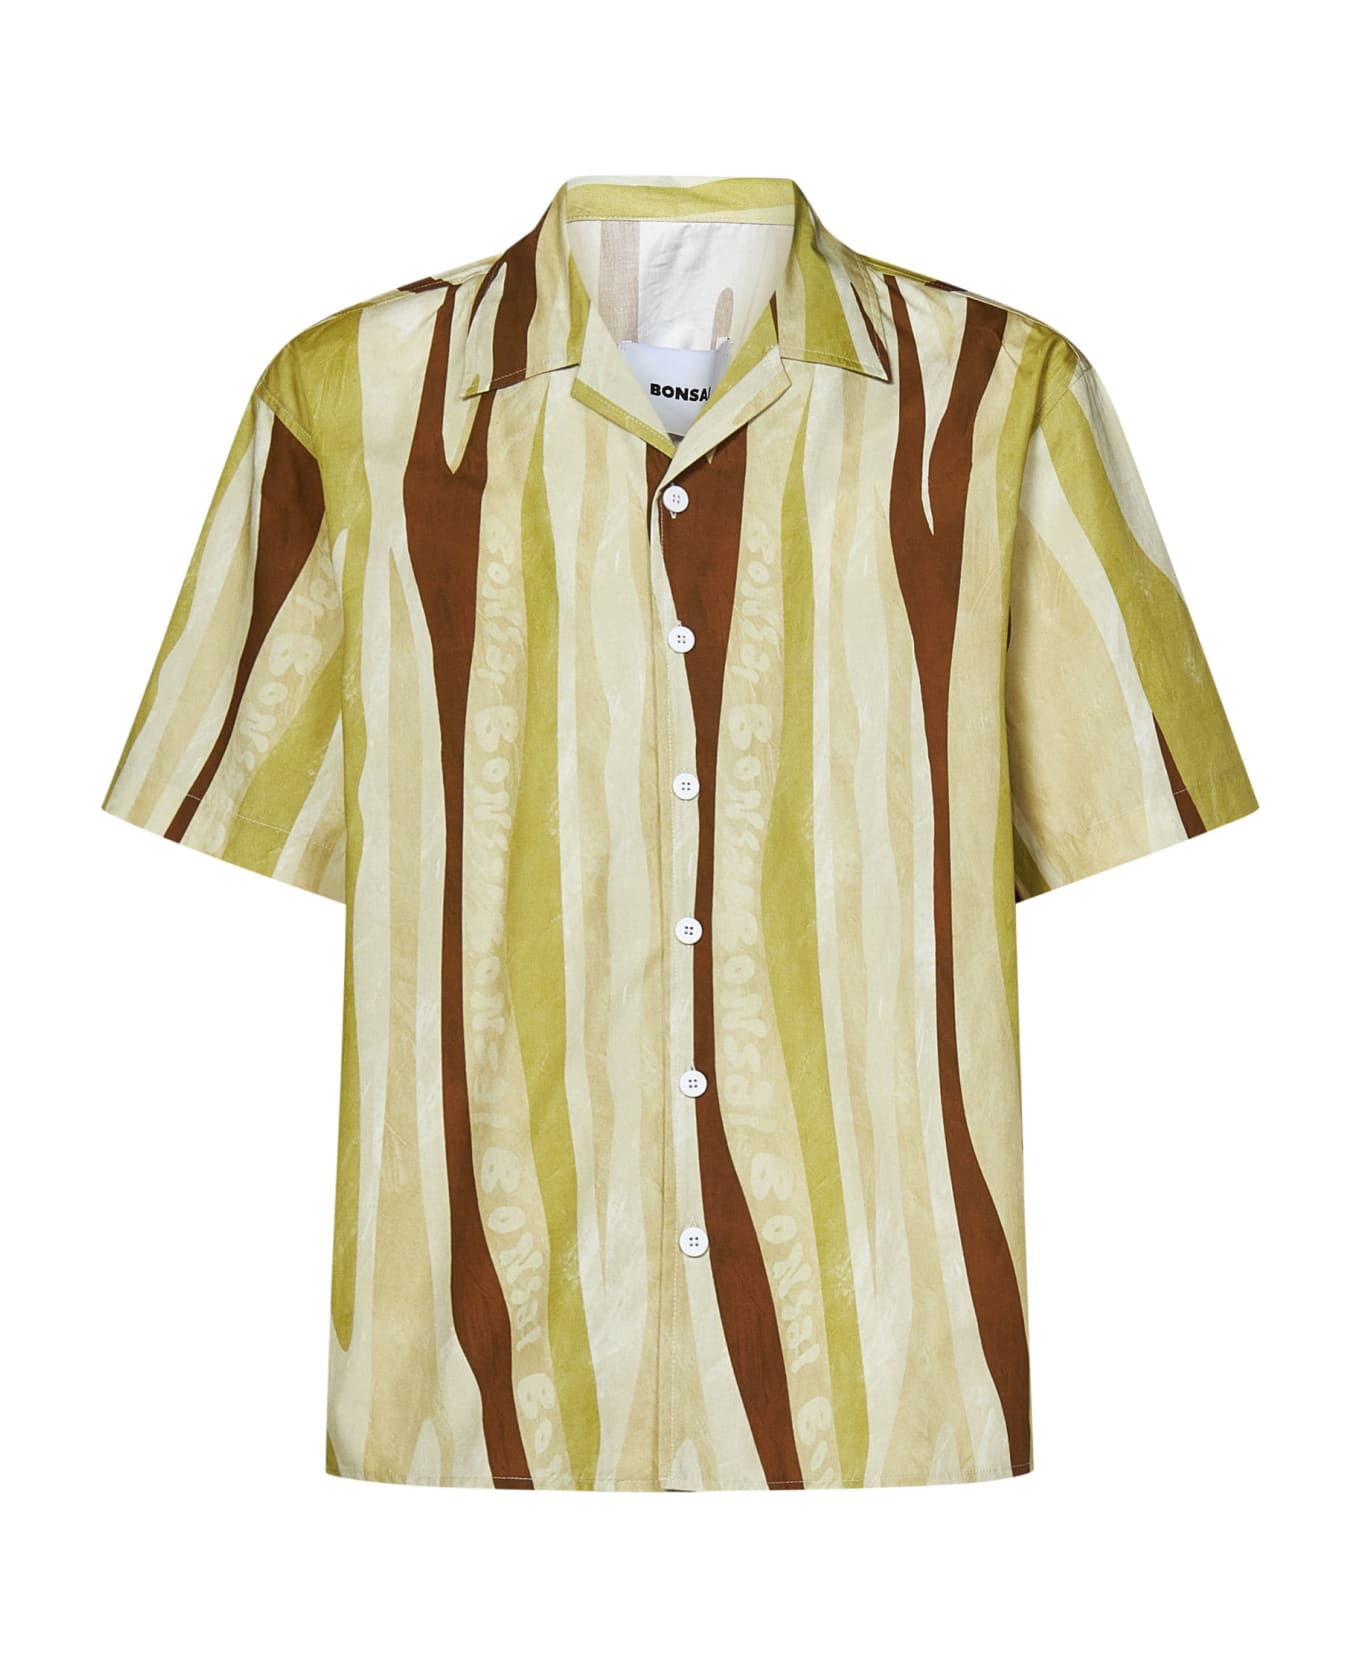 Bonsai Shirt - Colcol シャツ